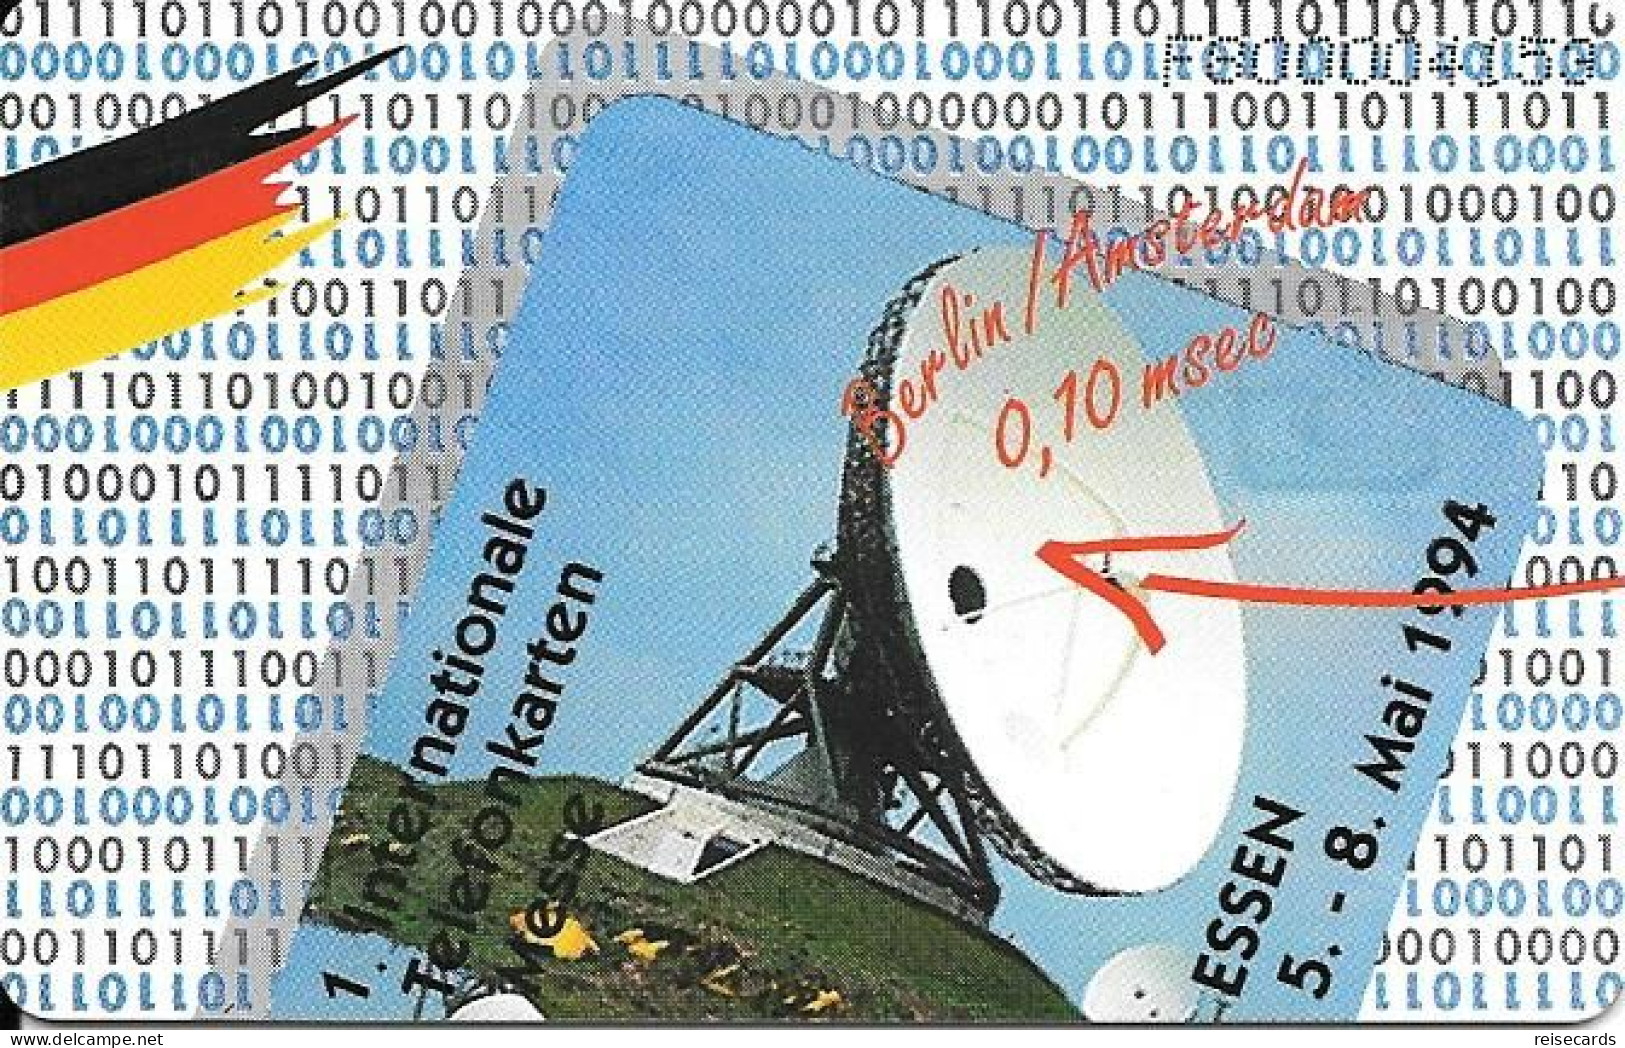 Netherlands: Ptt Telecom - 1994 1. Internationale Telefoonkaarten Beurs 94 Essen. Mint - Openbaar